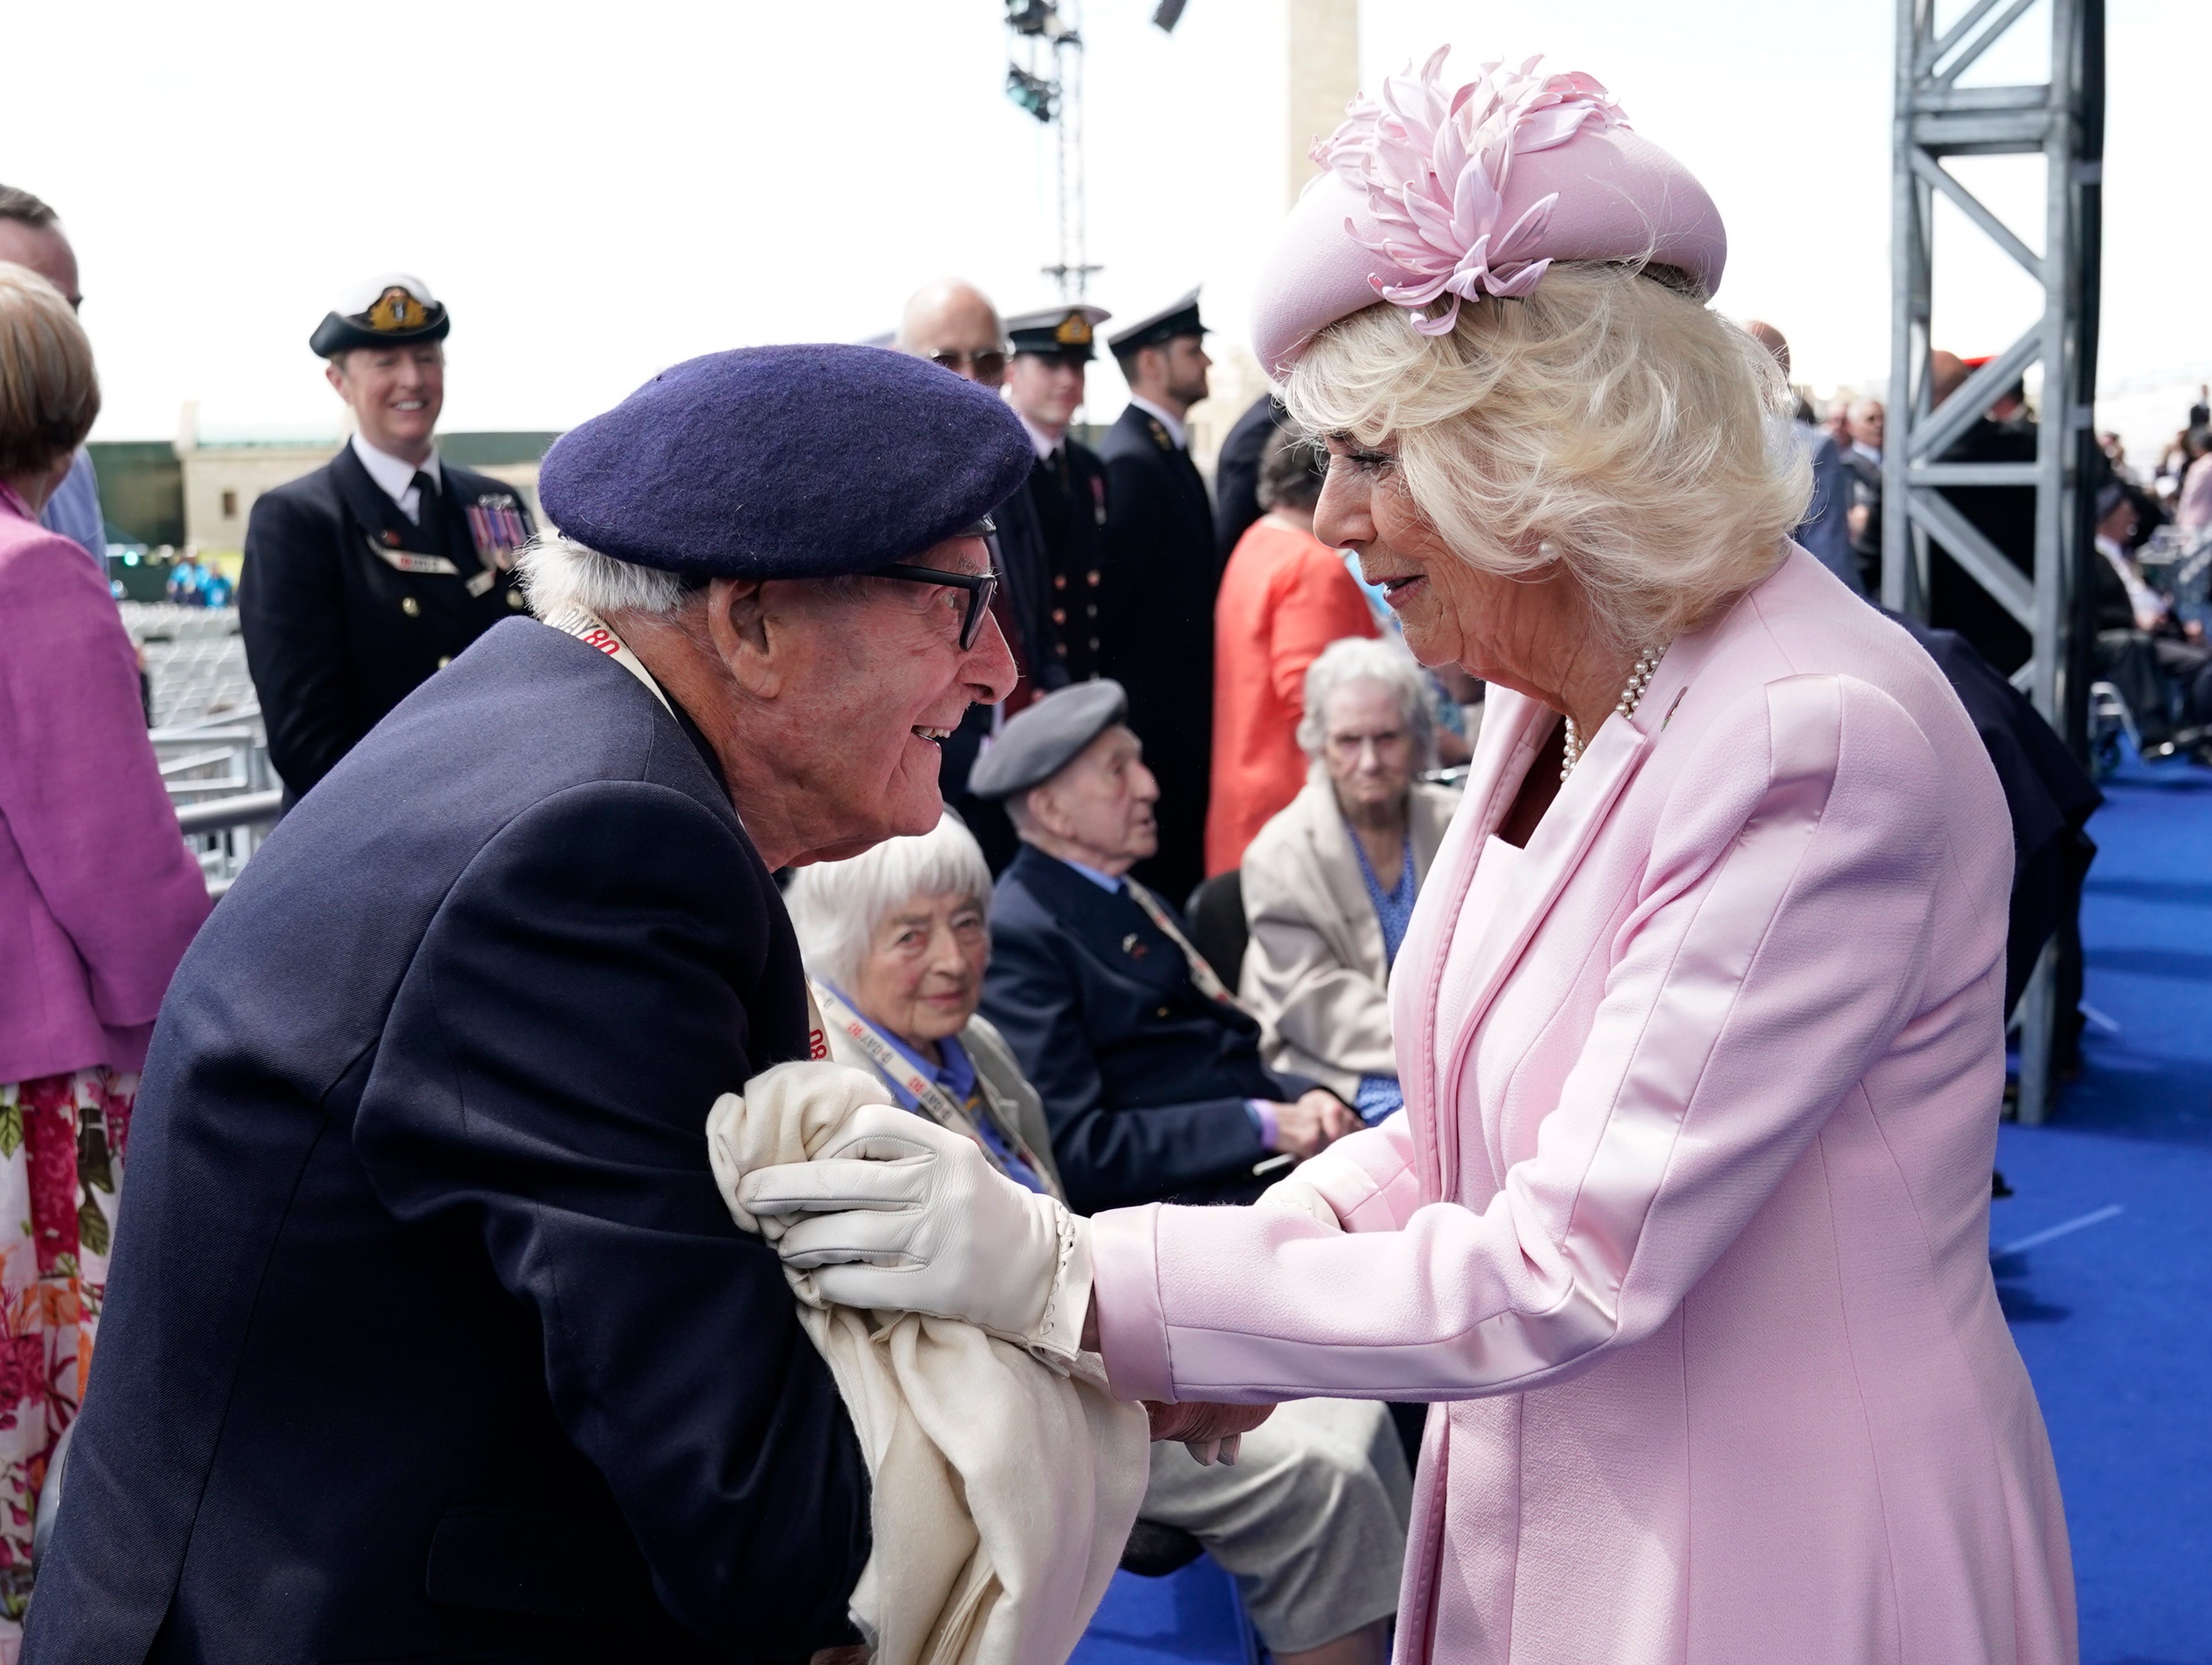 Camilla met with veterans